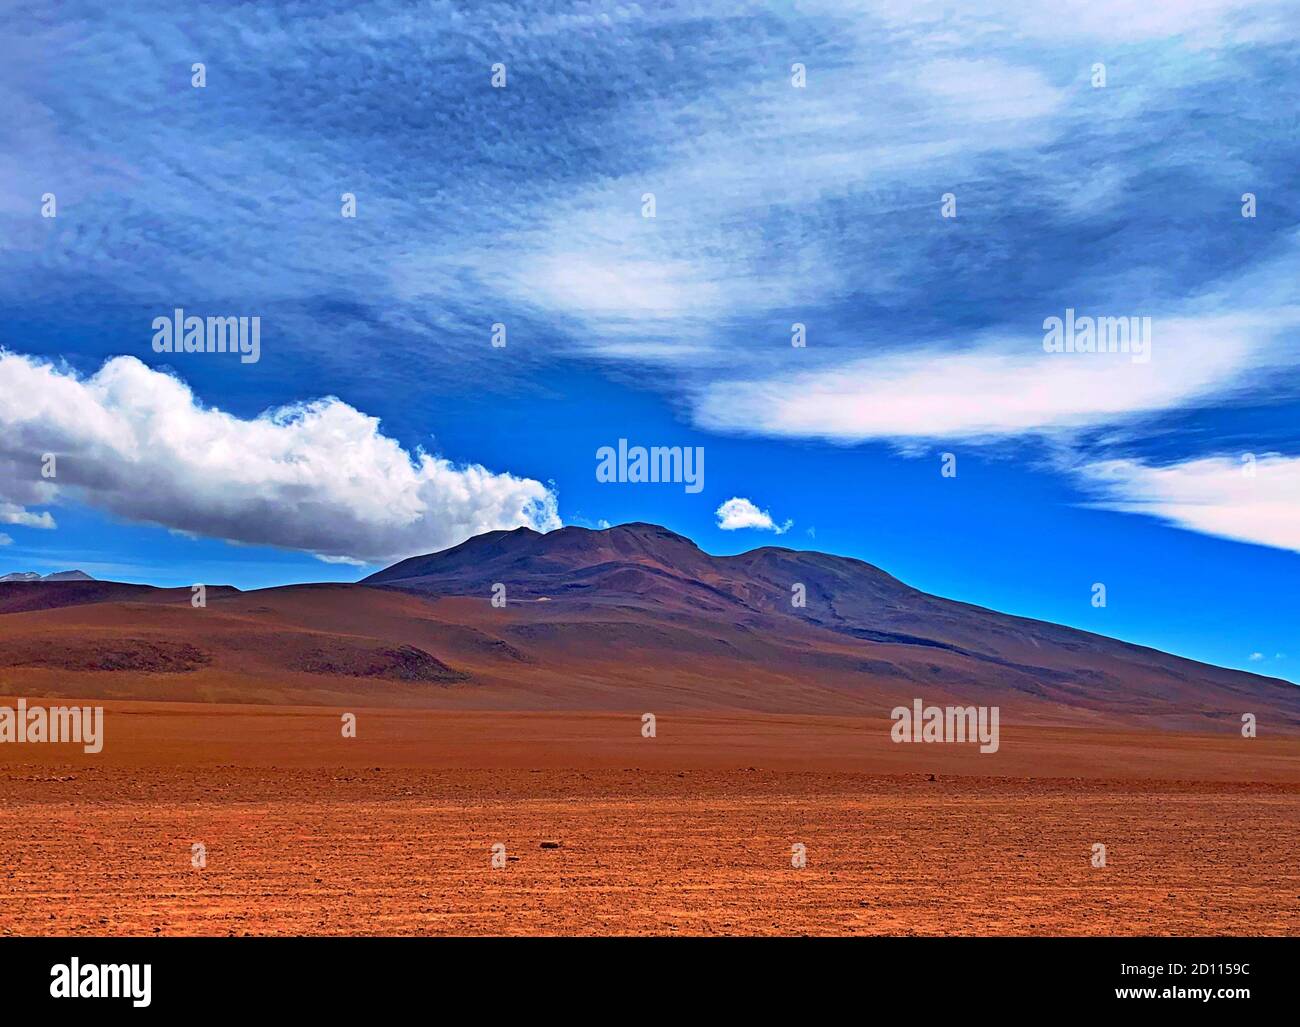 Andes montagnes volcaniques dans le désert. Nature sauvage en Bolivie, Amérique du Sud. Paysage de nuages pittoresques dans le ciel bolivien. Terrain Uni rouge. Banque D'Images